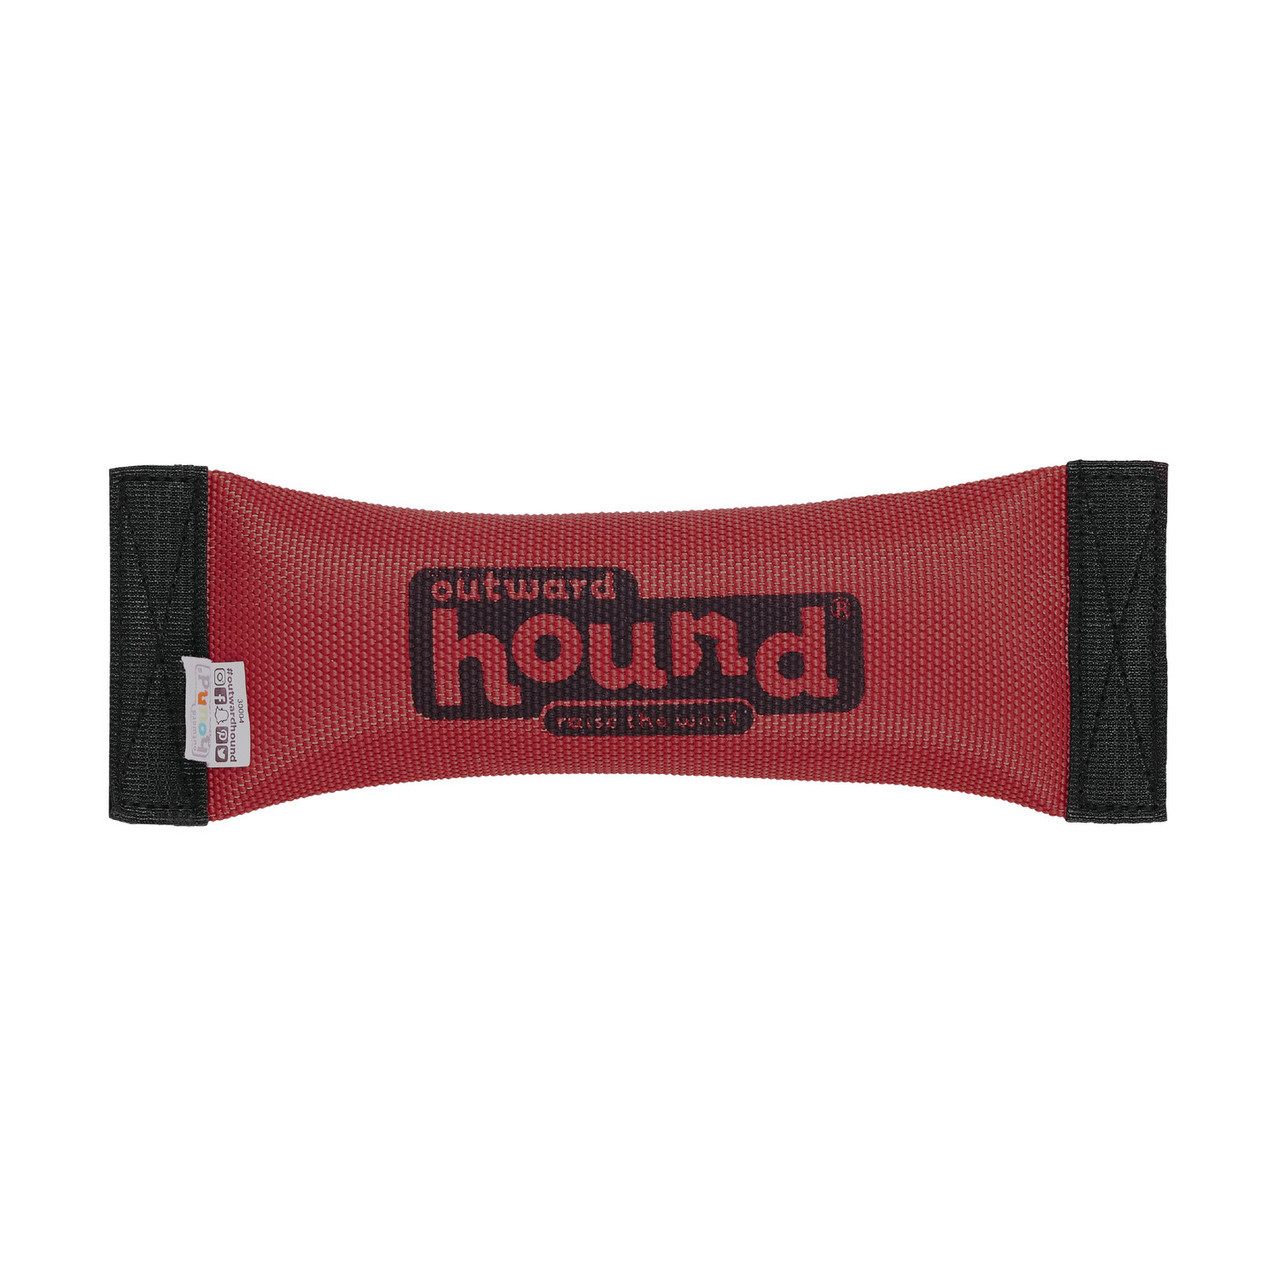 Outward Hound Home - Shop dog toys, chew toys, dog gear 